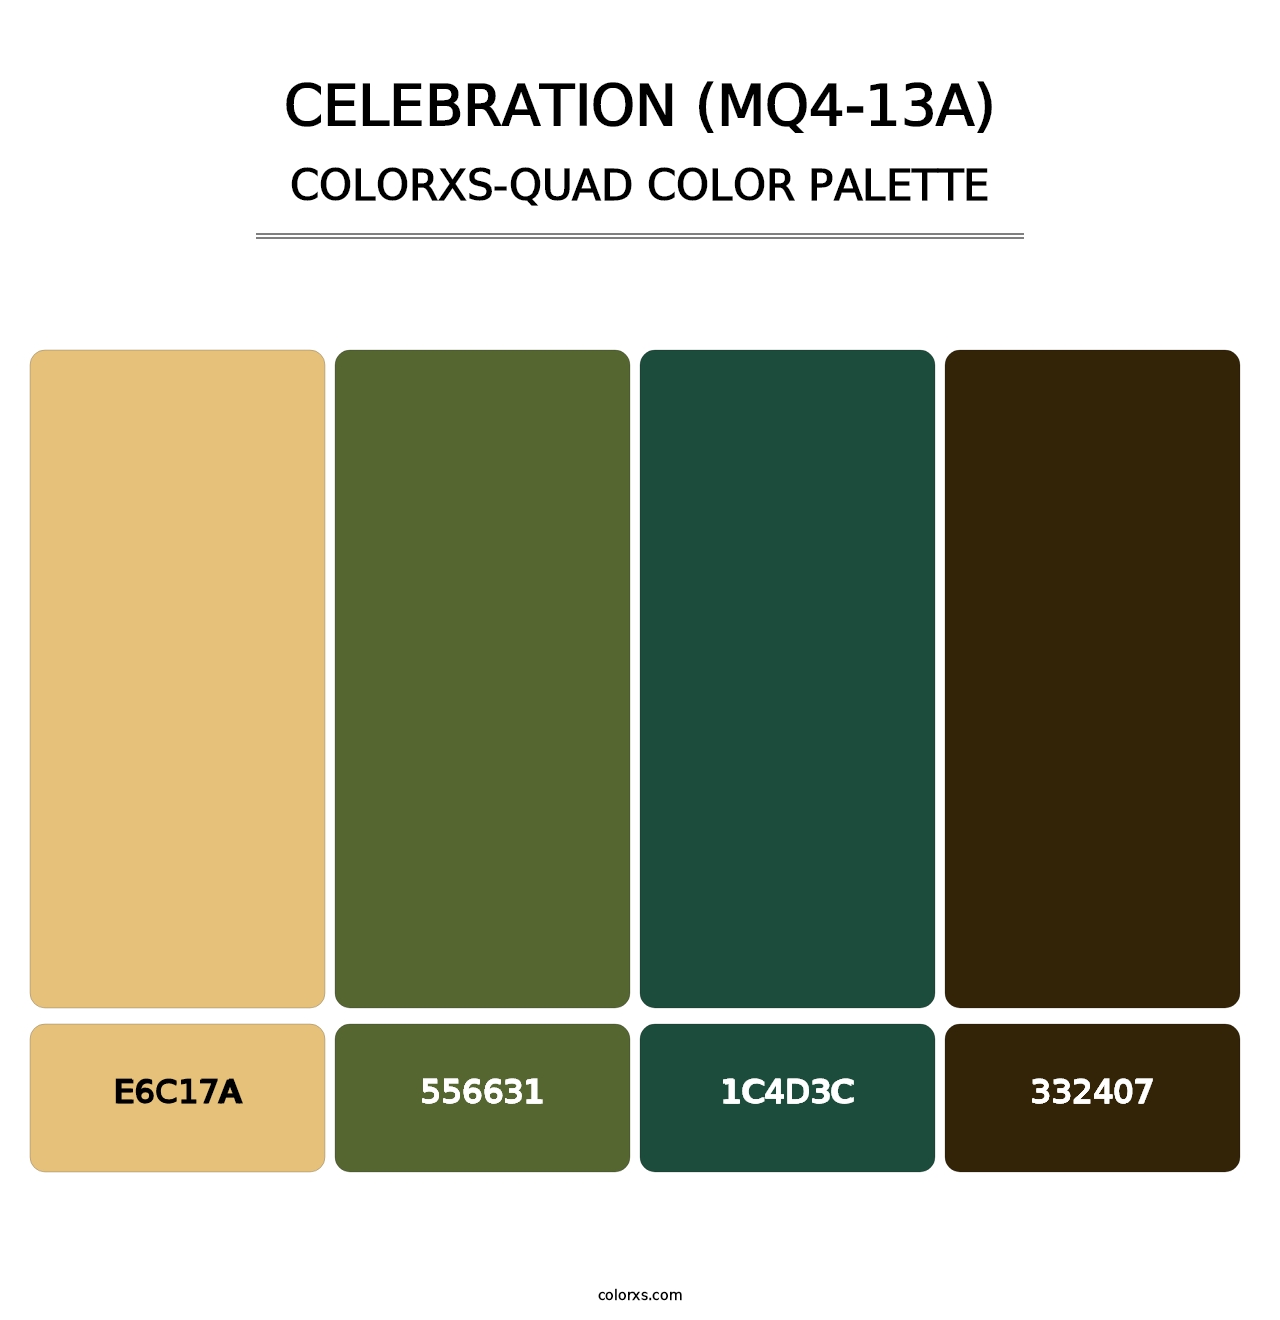 Celebration (MQ4-13A) - Colorxs Quad Palette